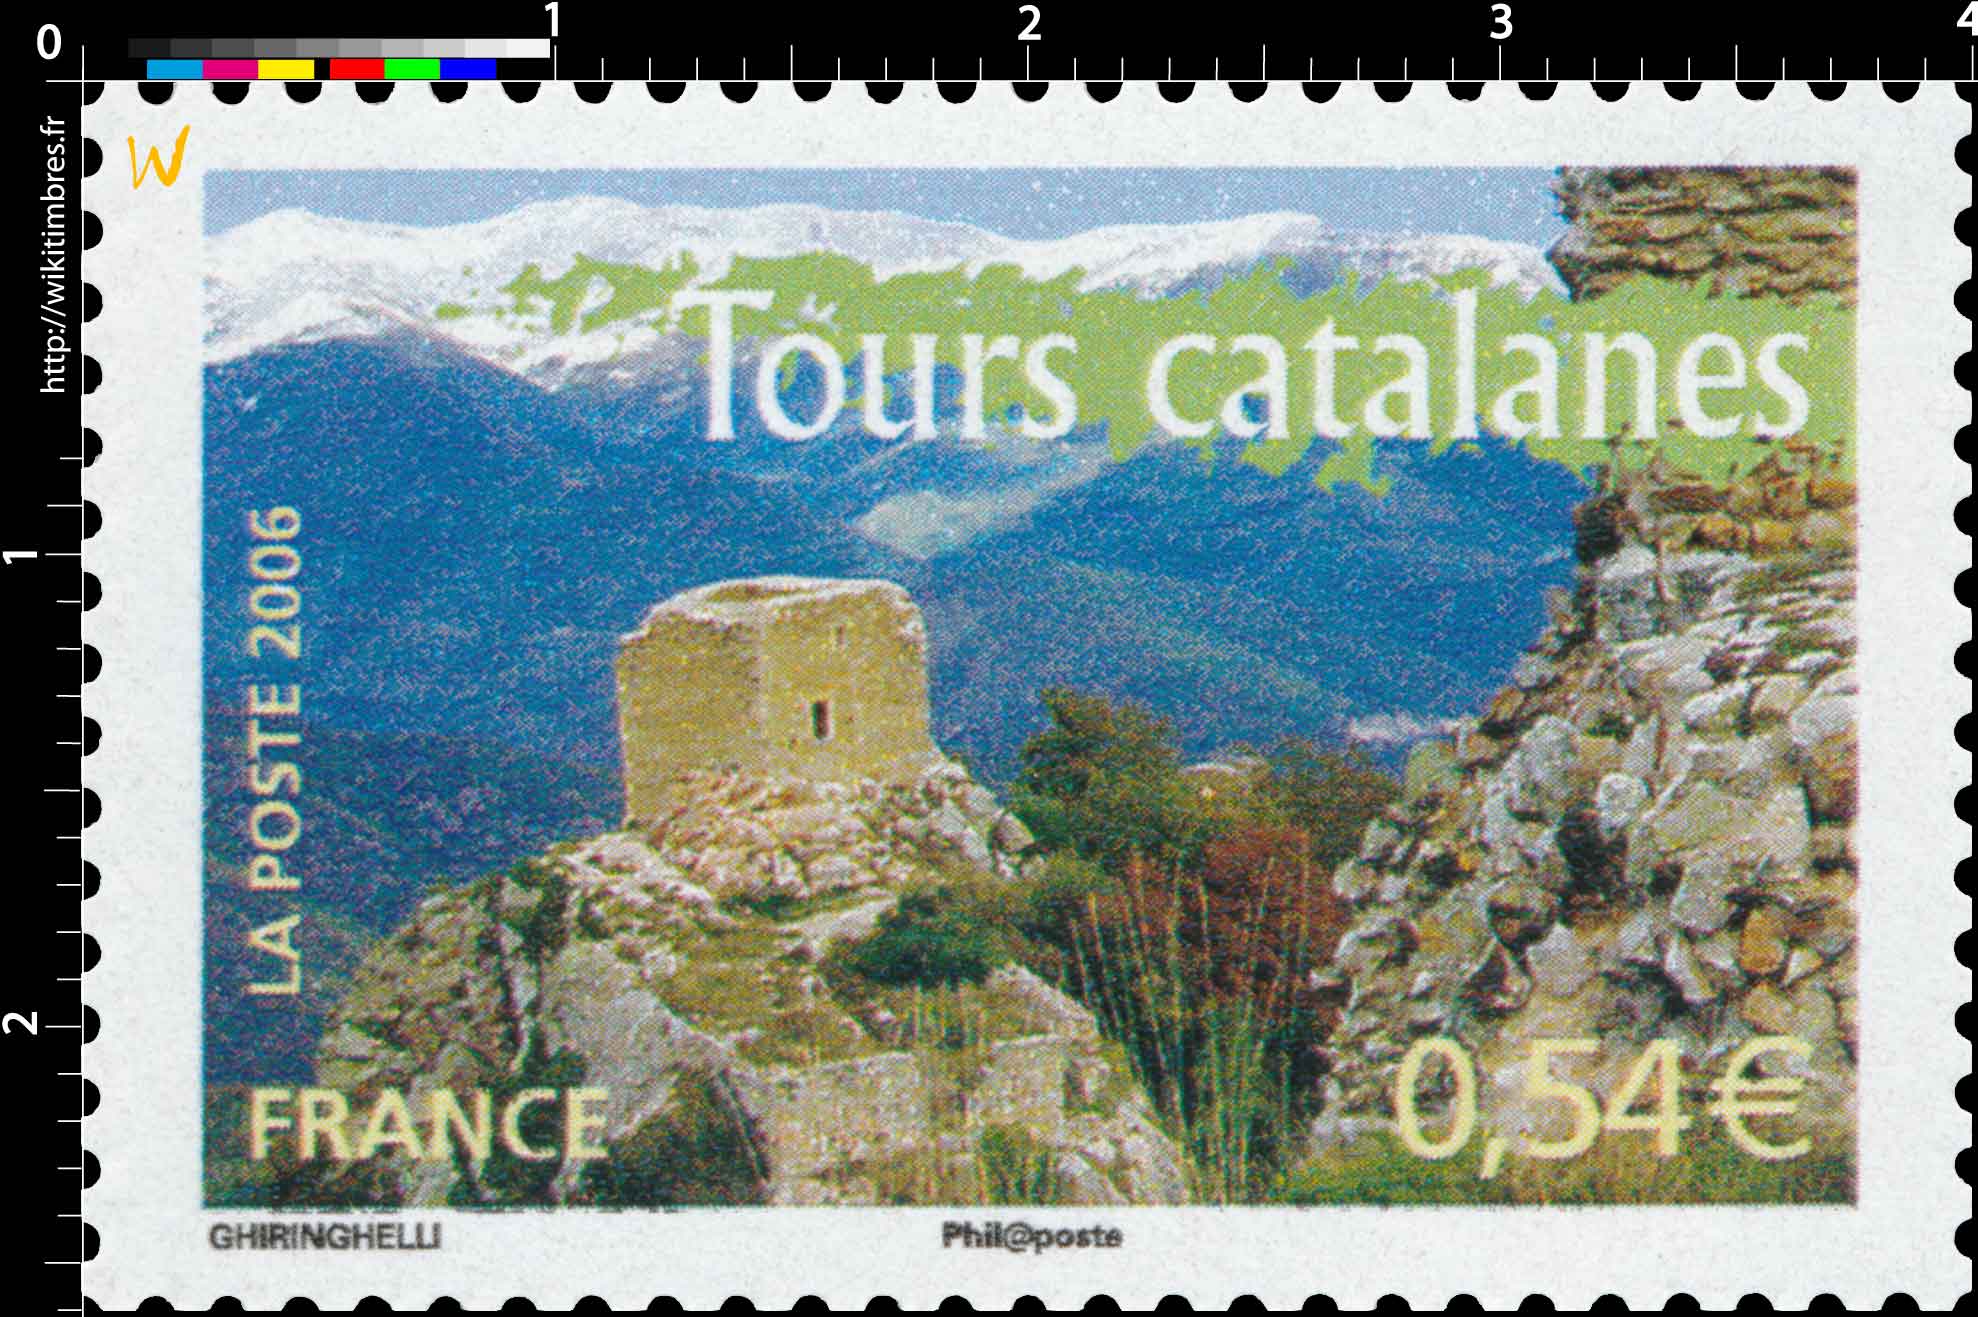 2006 Tours catalanes